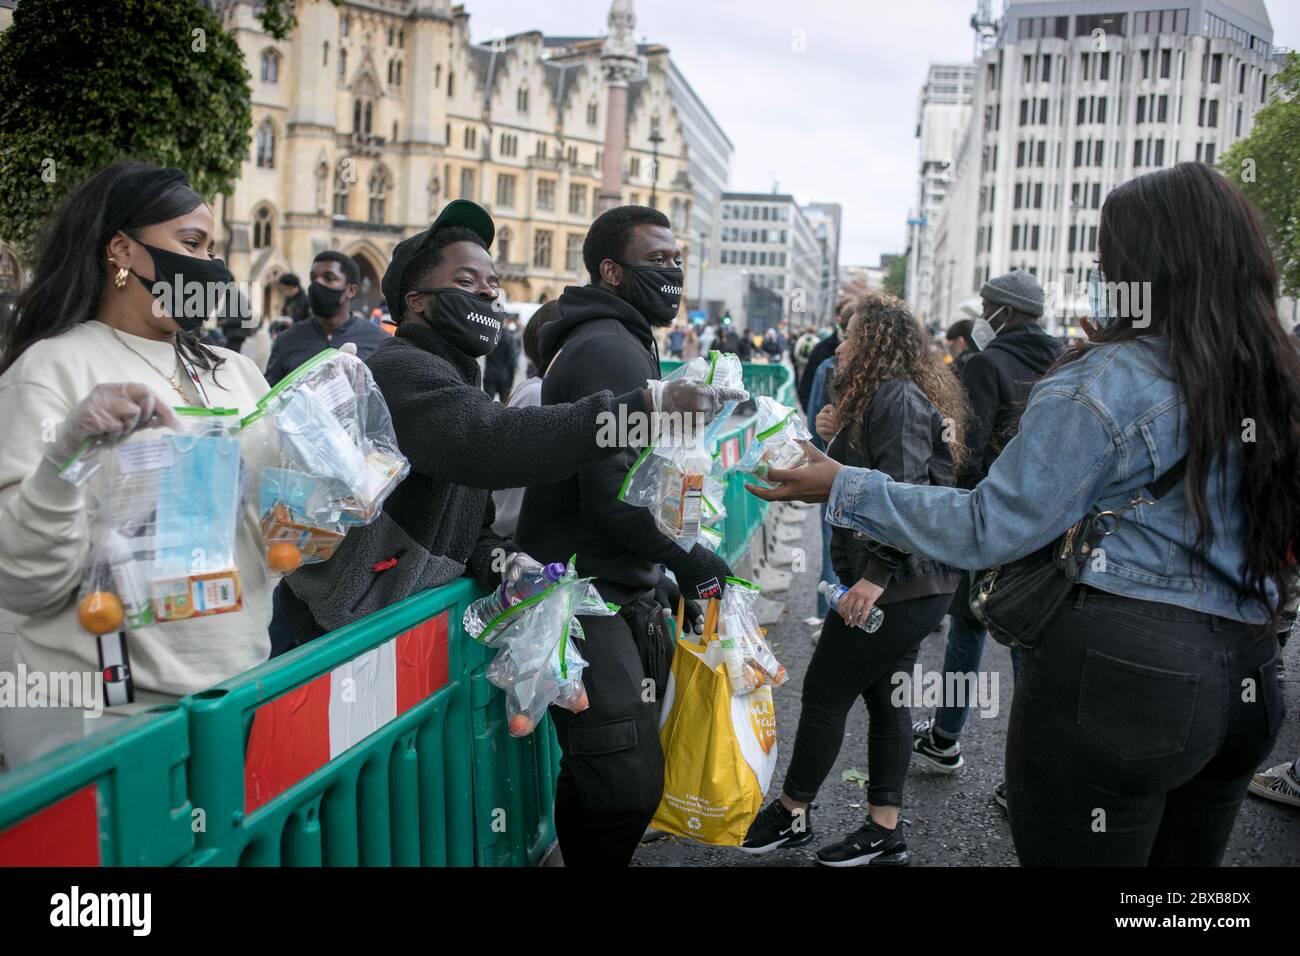 Un groupe de jeunes volontaires donnent des sacs gratuits avec un masque, un assainisseur, de la clémentine et du jus aux manifestants lors du rassemblement contre le racisme dans le centre de Londres. Banque D'Images